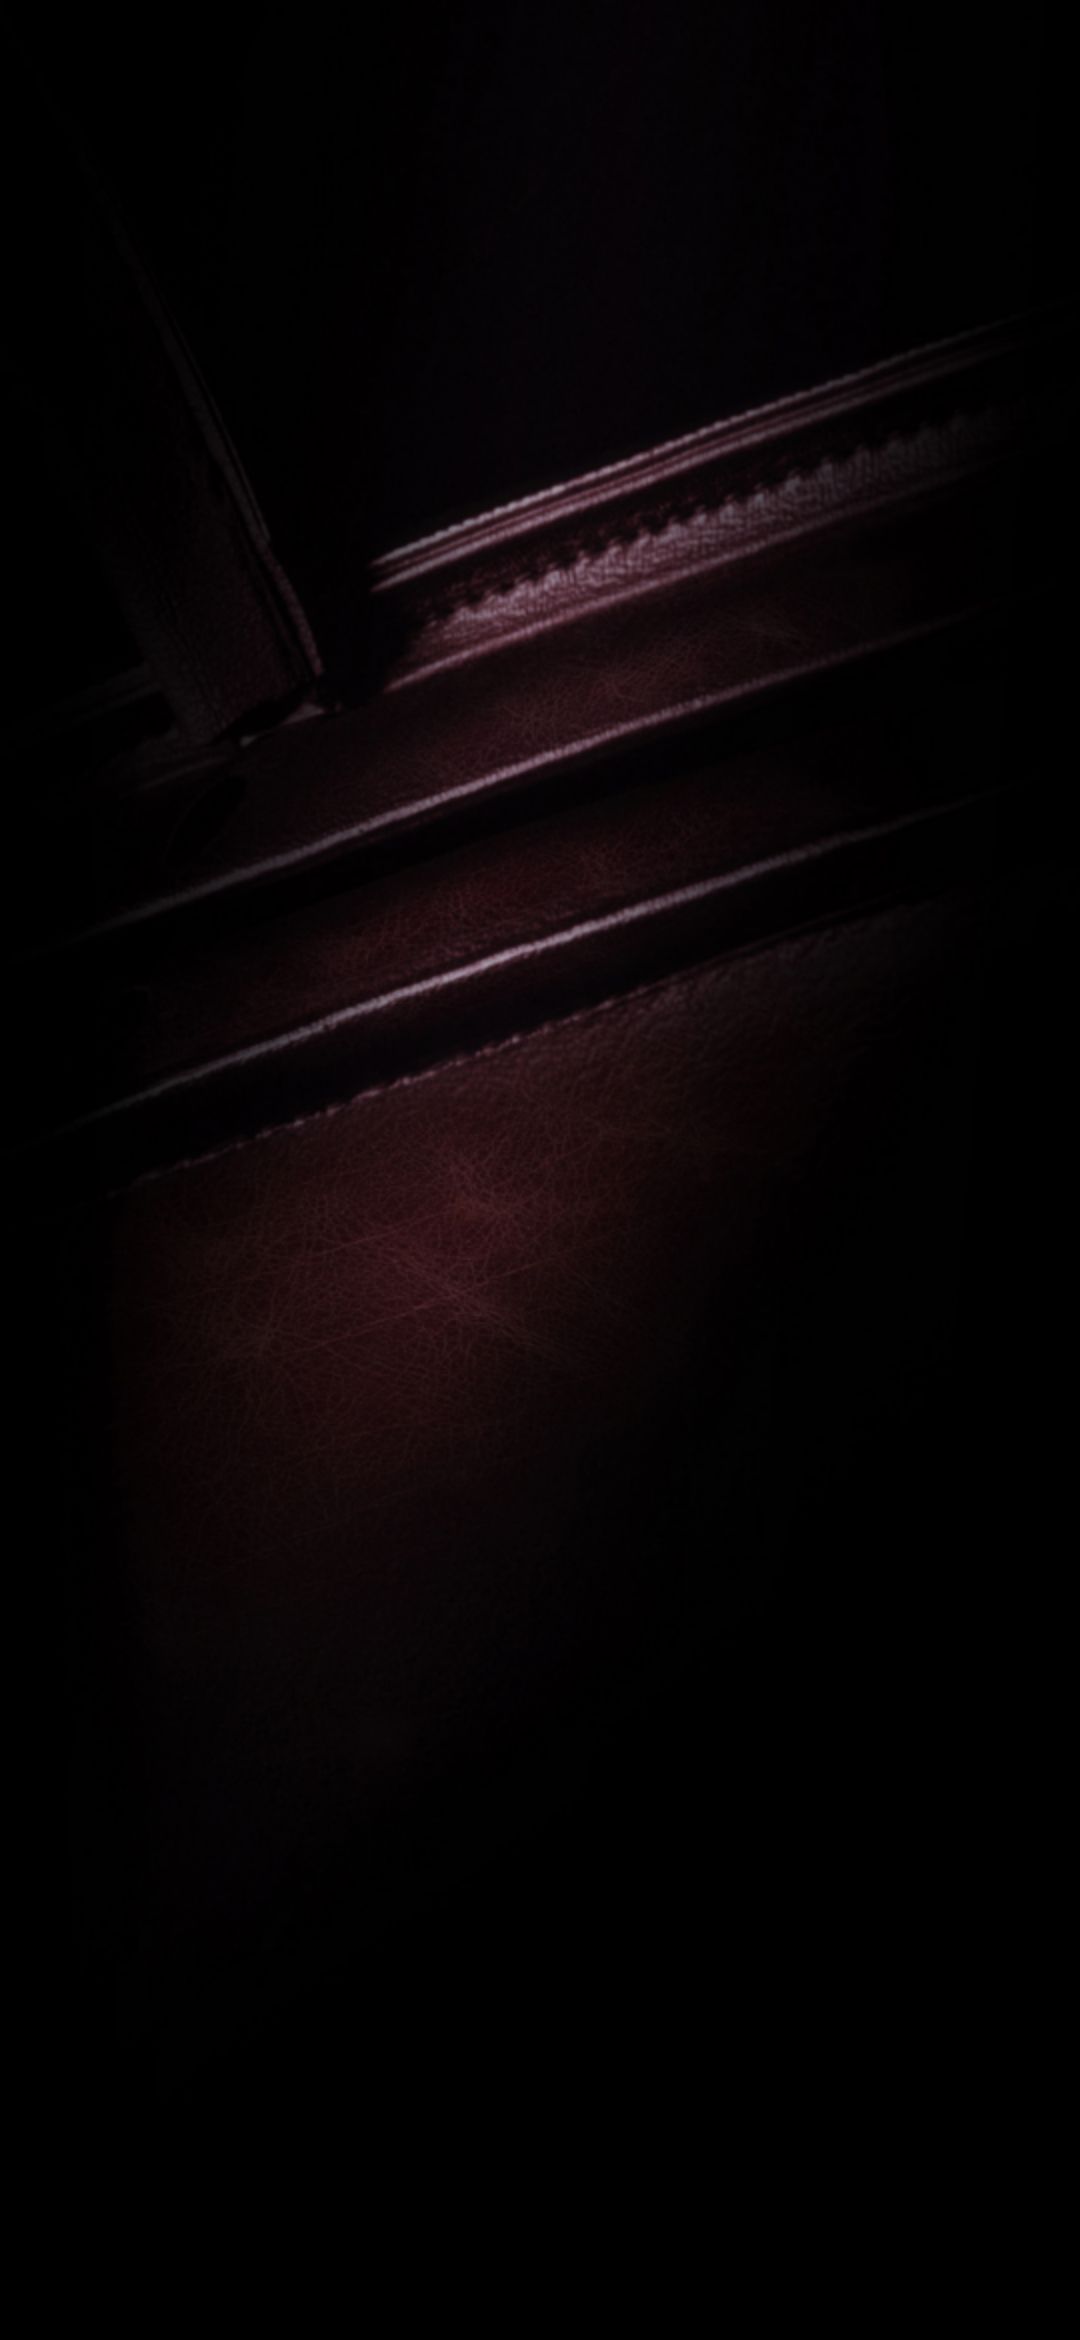 화웨이 메이트 8 벽지,검정,어둠,빛,빨간,선